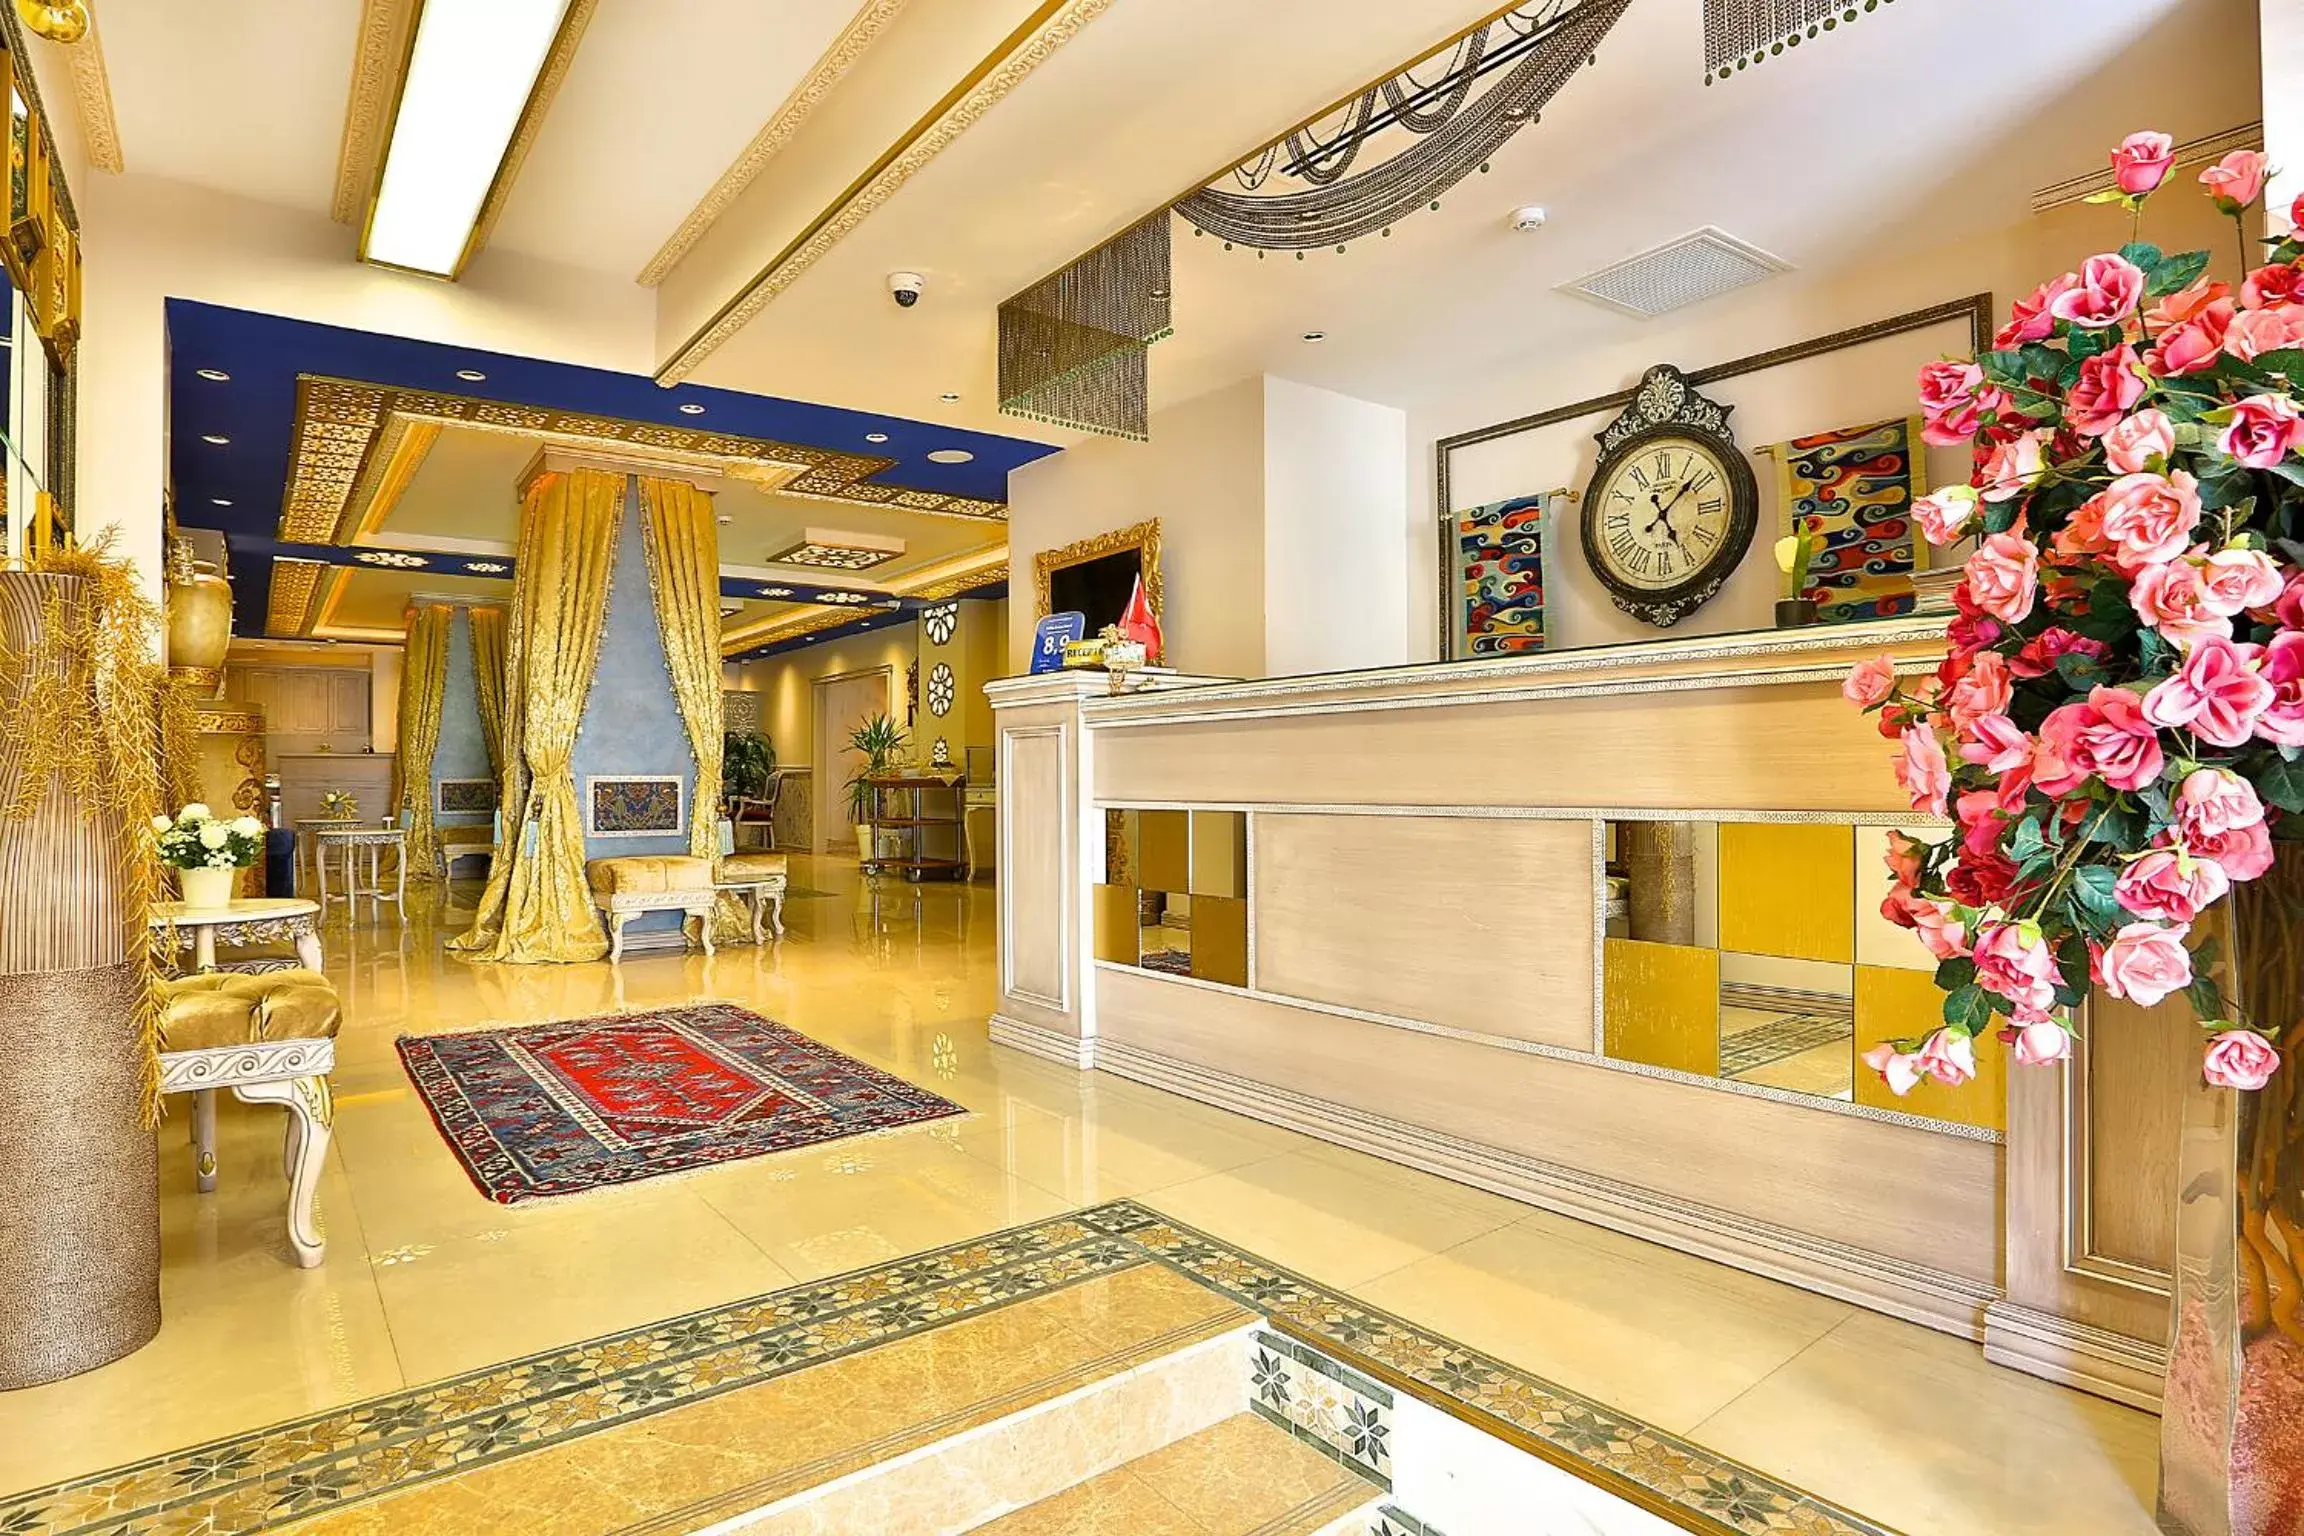 Lobby or reception, Lobby/Reception in Edibe Sultan Hotel